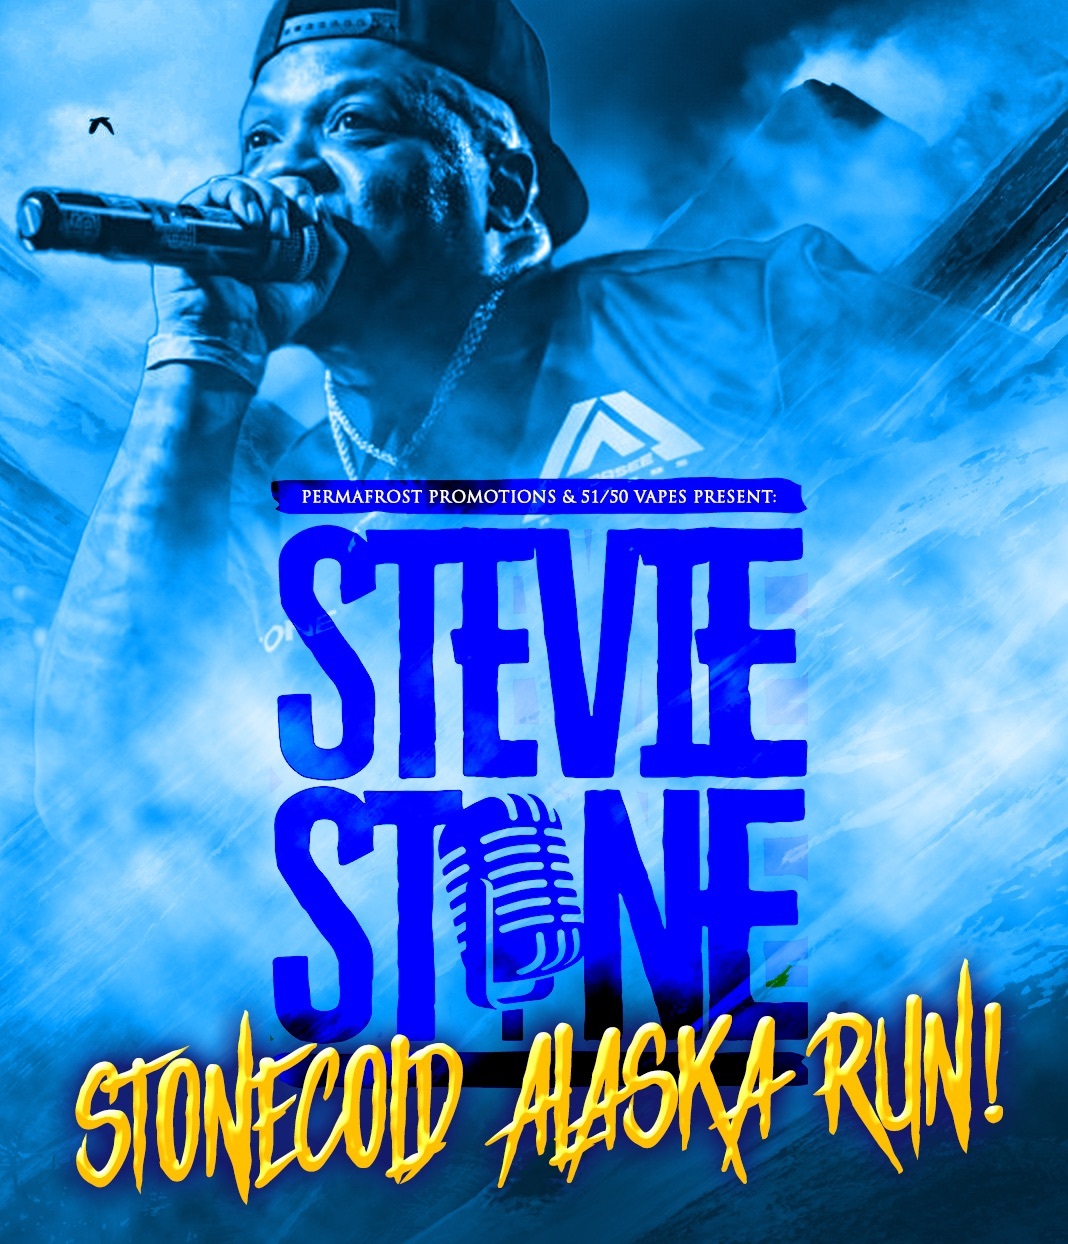 Stevie Stone - Live Concert in Soldotna